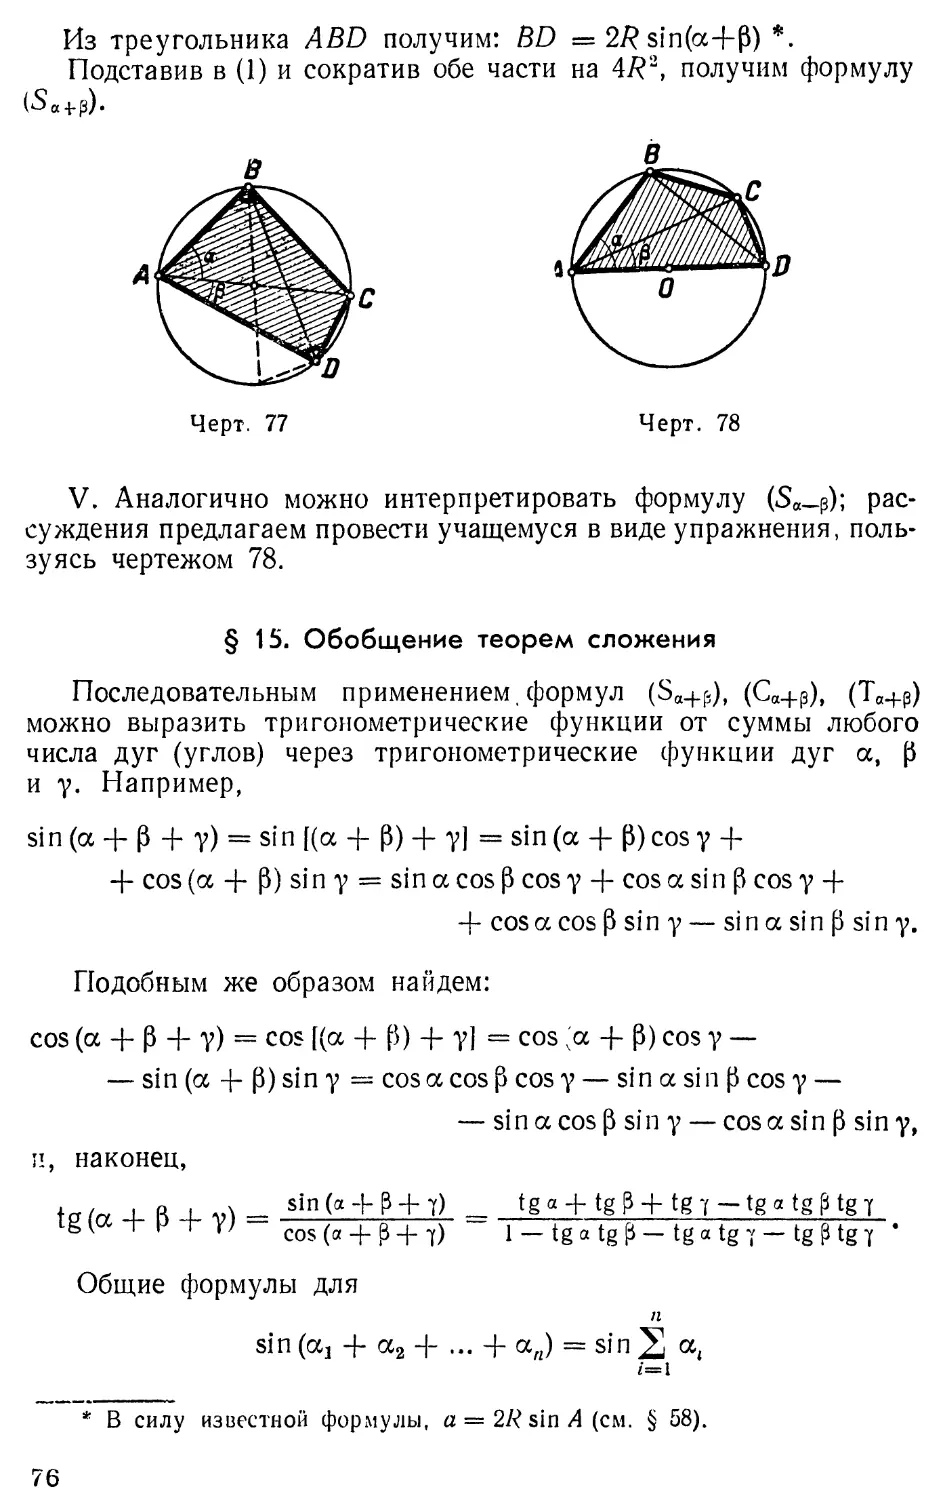 § 15. Обобщение теорем сложения